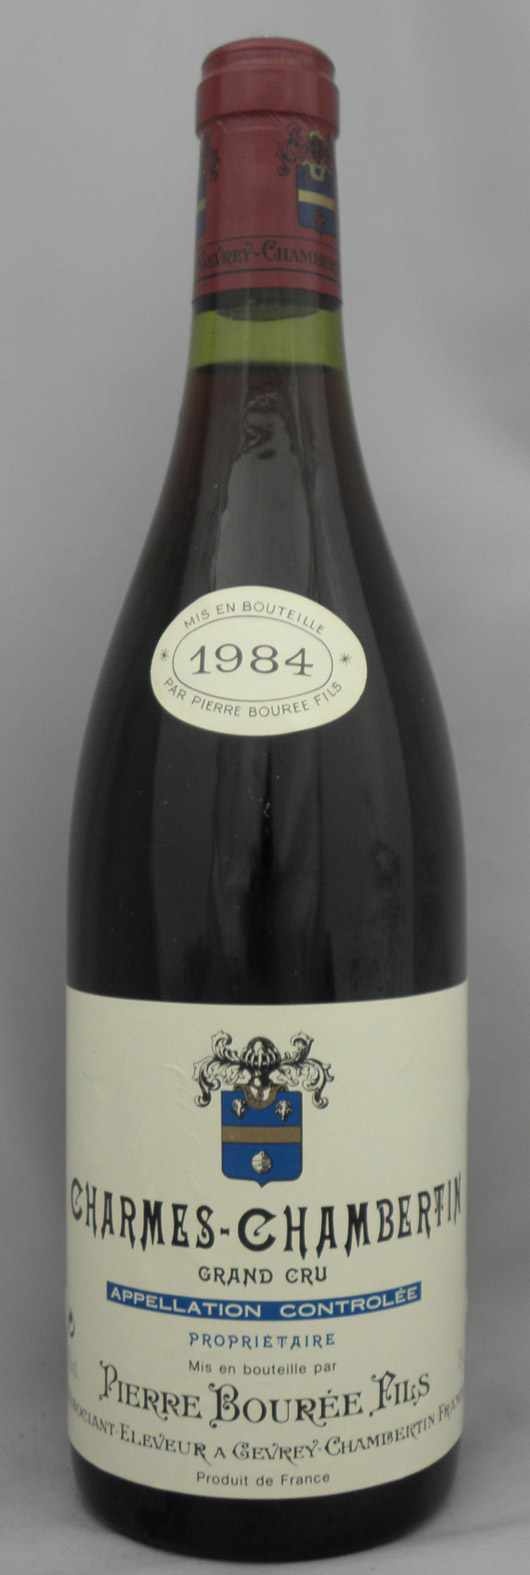 1984年 シャルム シャンベルタン グラン クリュ Charmes Chambertin Grand Cru の販売 ヴィンテージワイン専門店のnengou Wine Com